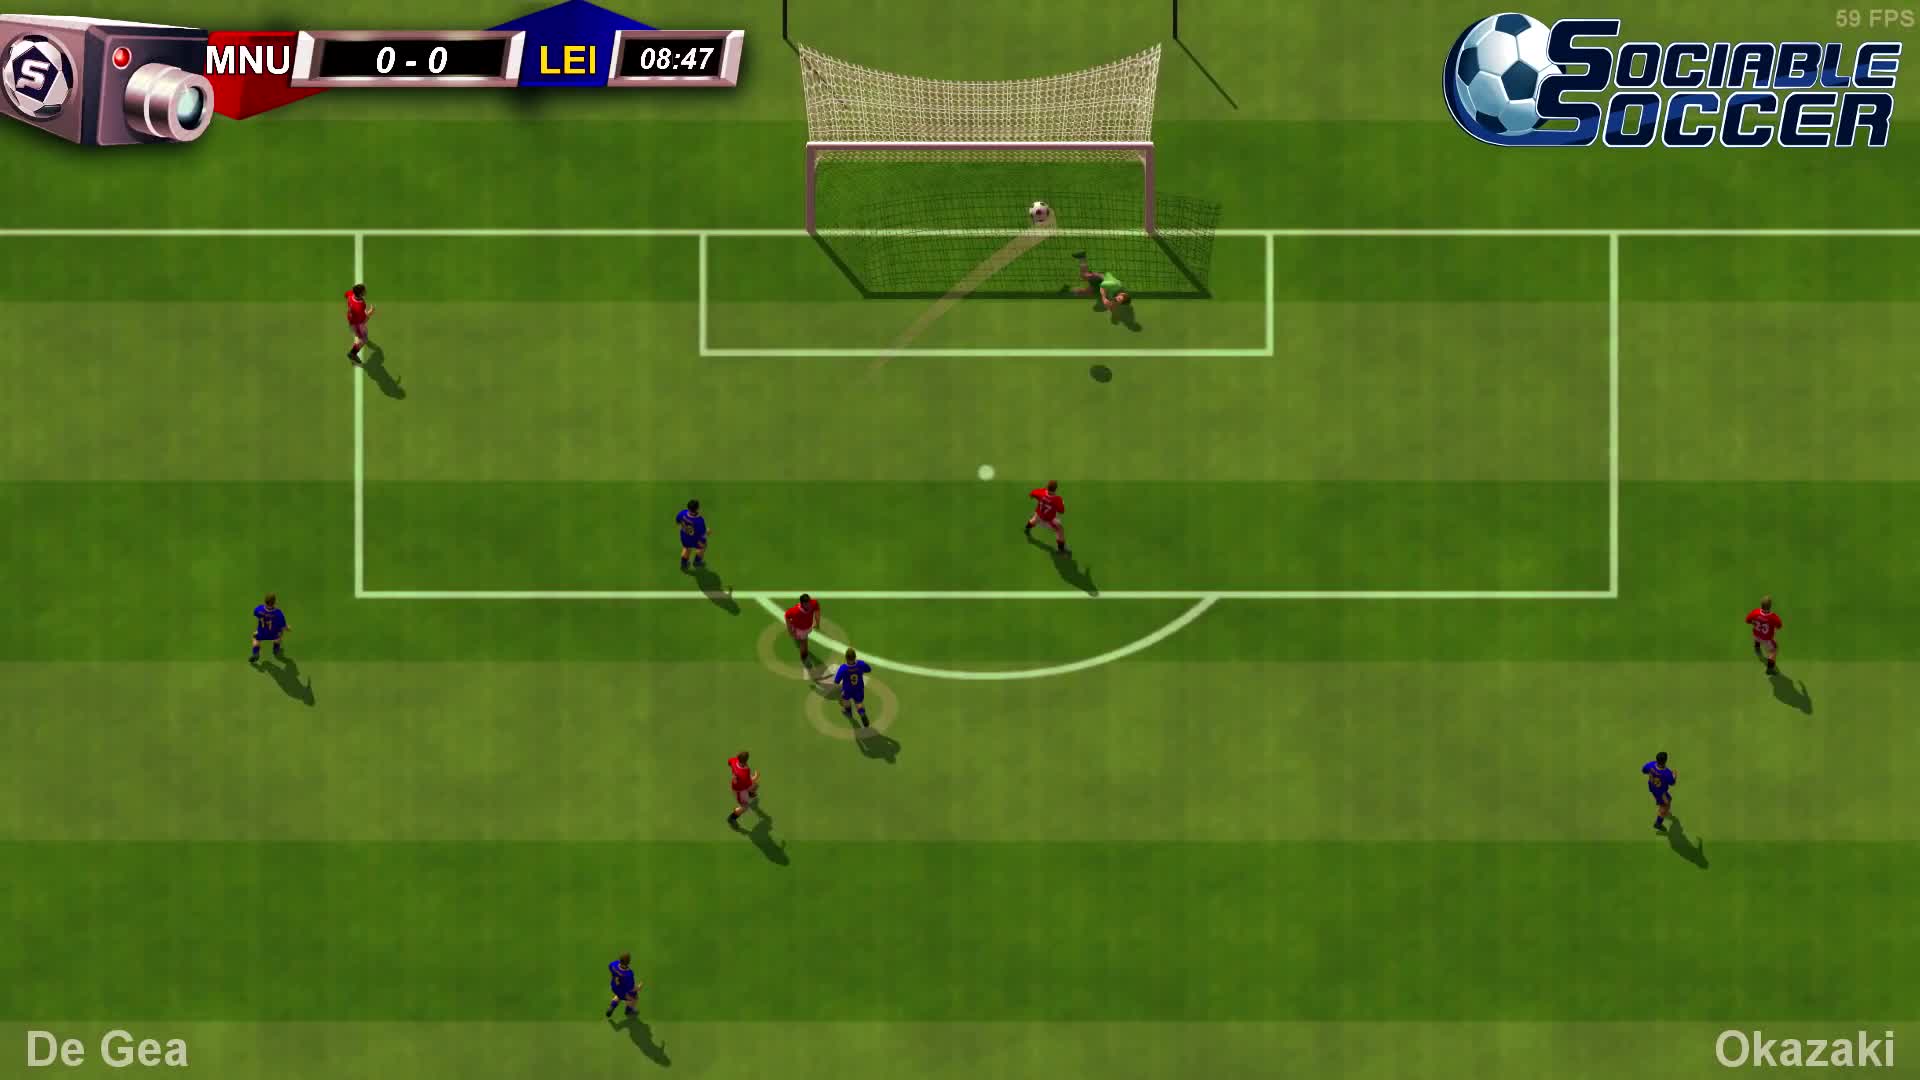 Sociable Soccer - Gameplay Teaser Trailer